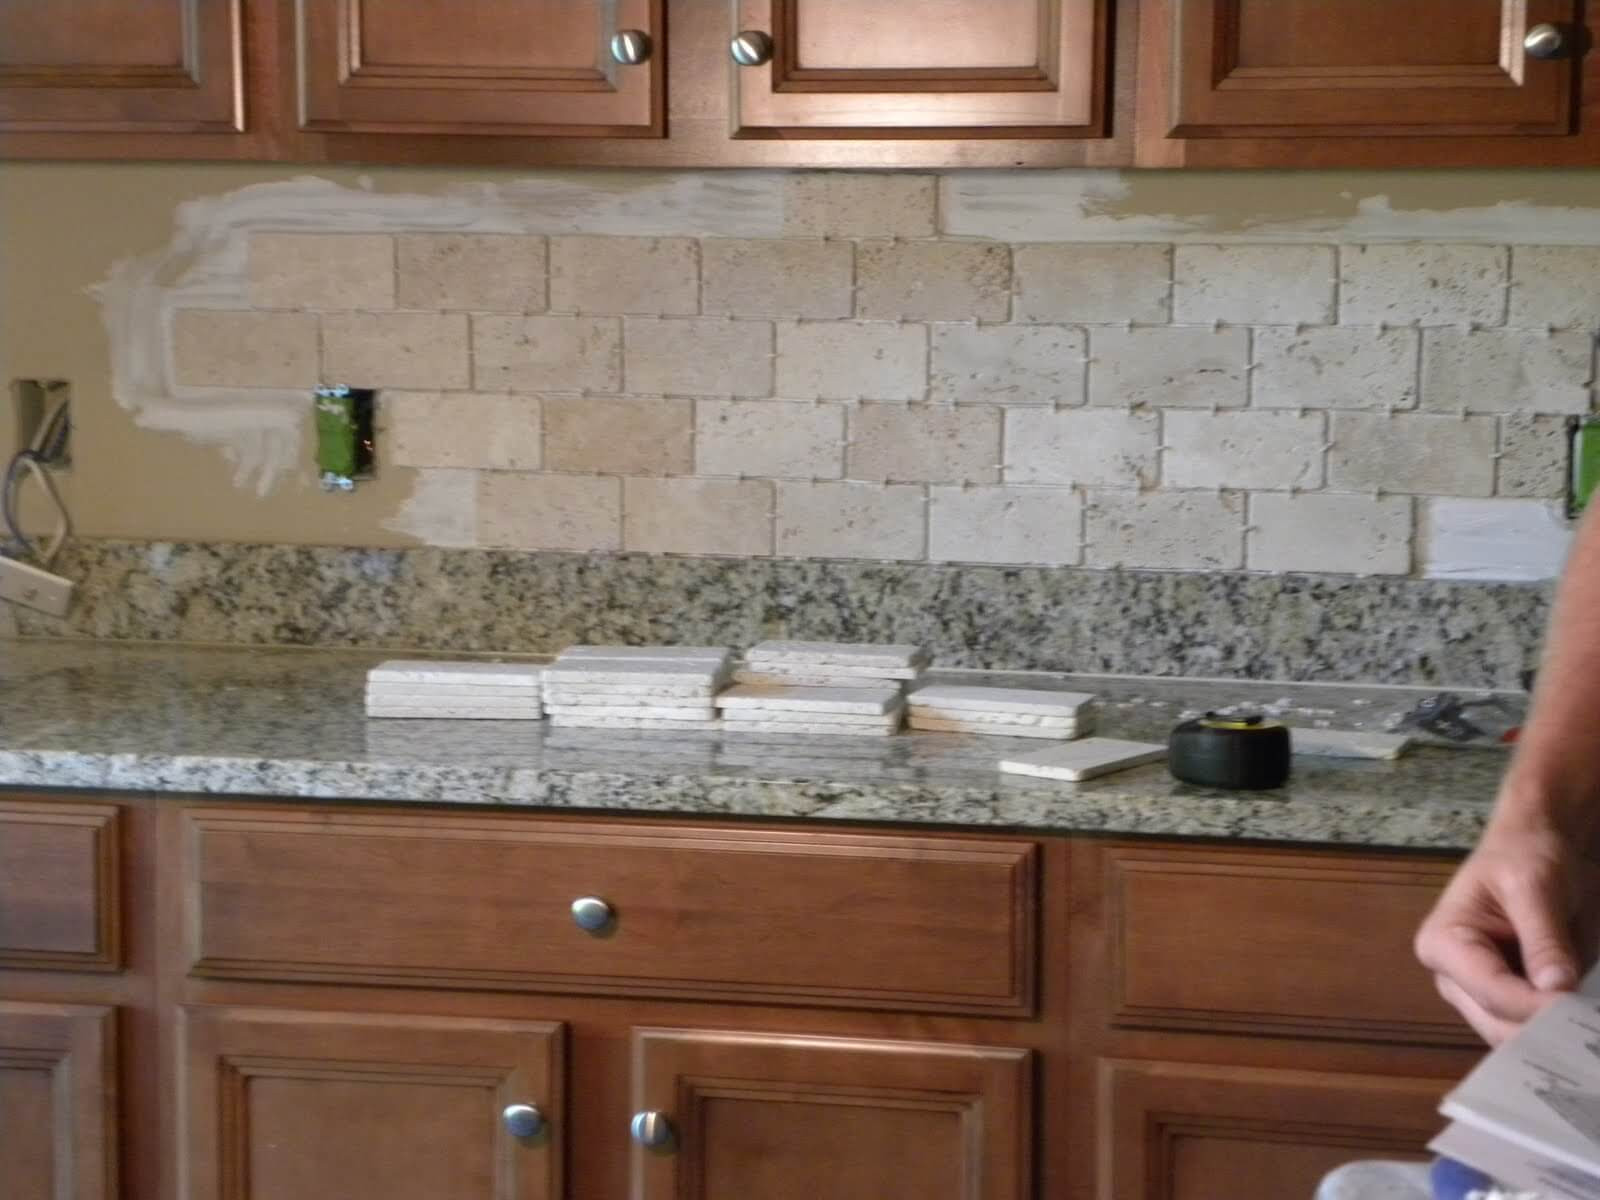 Discount Kitchen Backsplash Tile
 23 Stunning Cheap Backsplash Tile CoRiver Homes